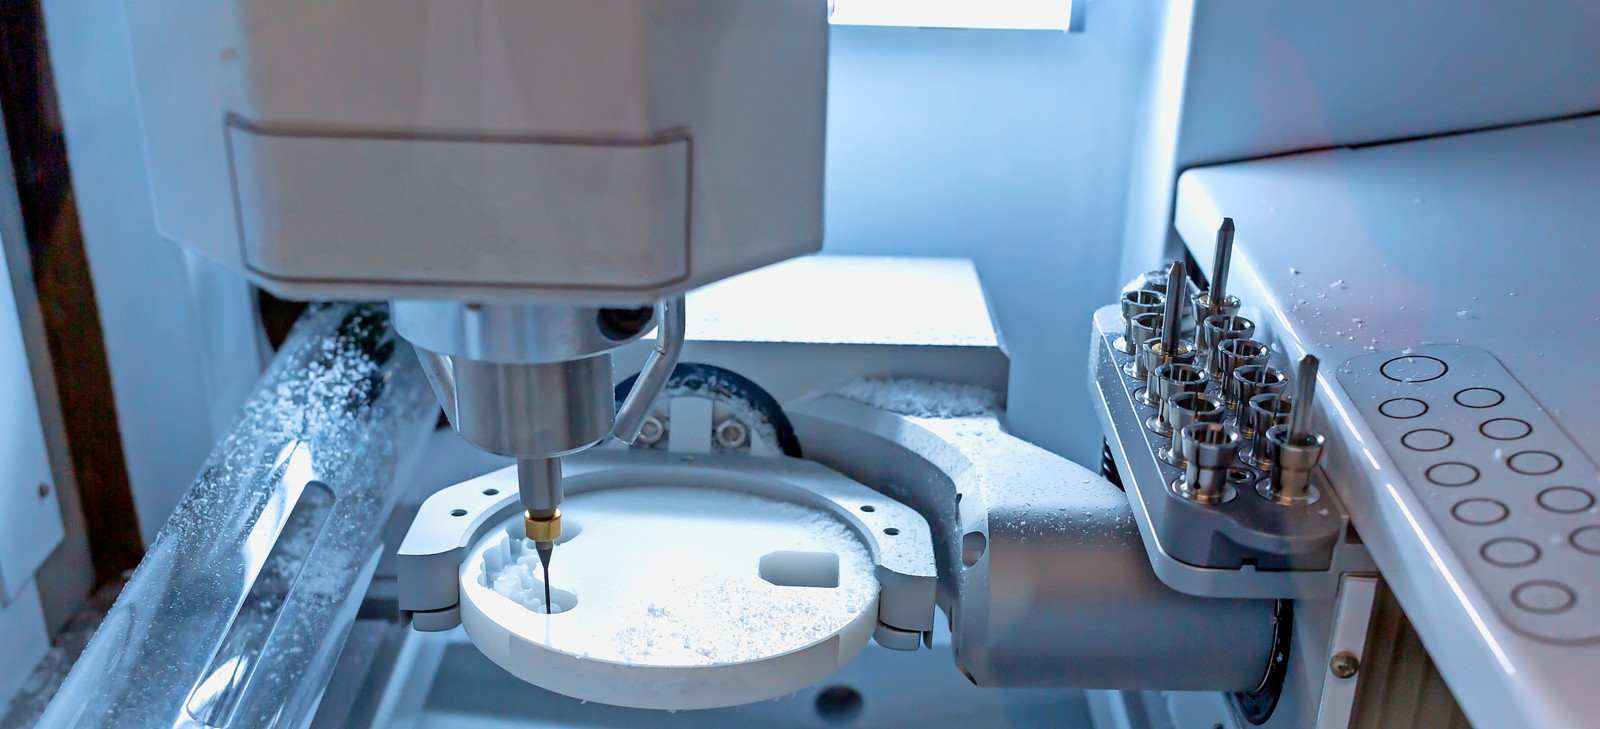 In der Medizintechnik sorgen ECY-Getriebe dank der hohen Steifigkeit für formgenaue Konturen und saubere Oberflächen.